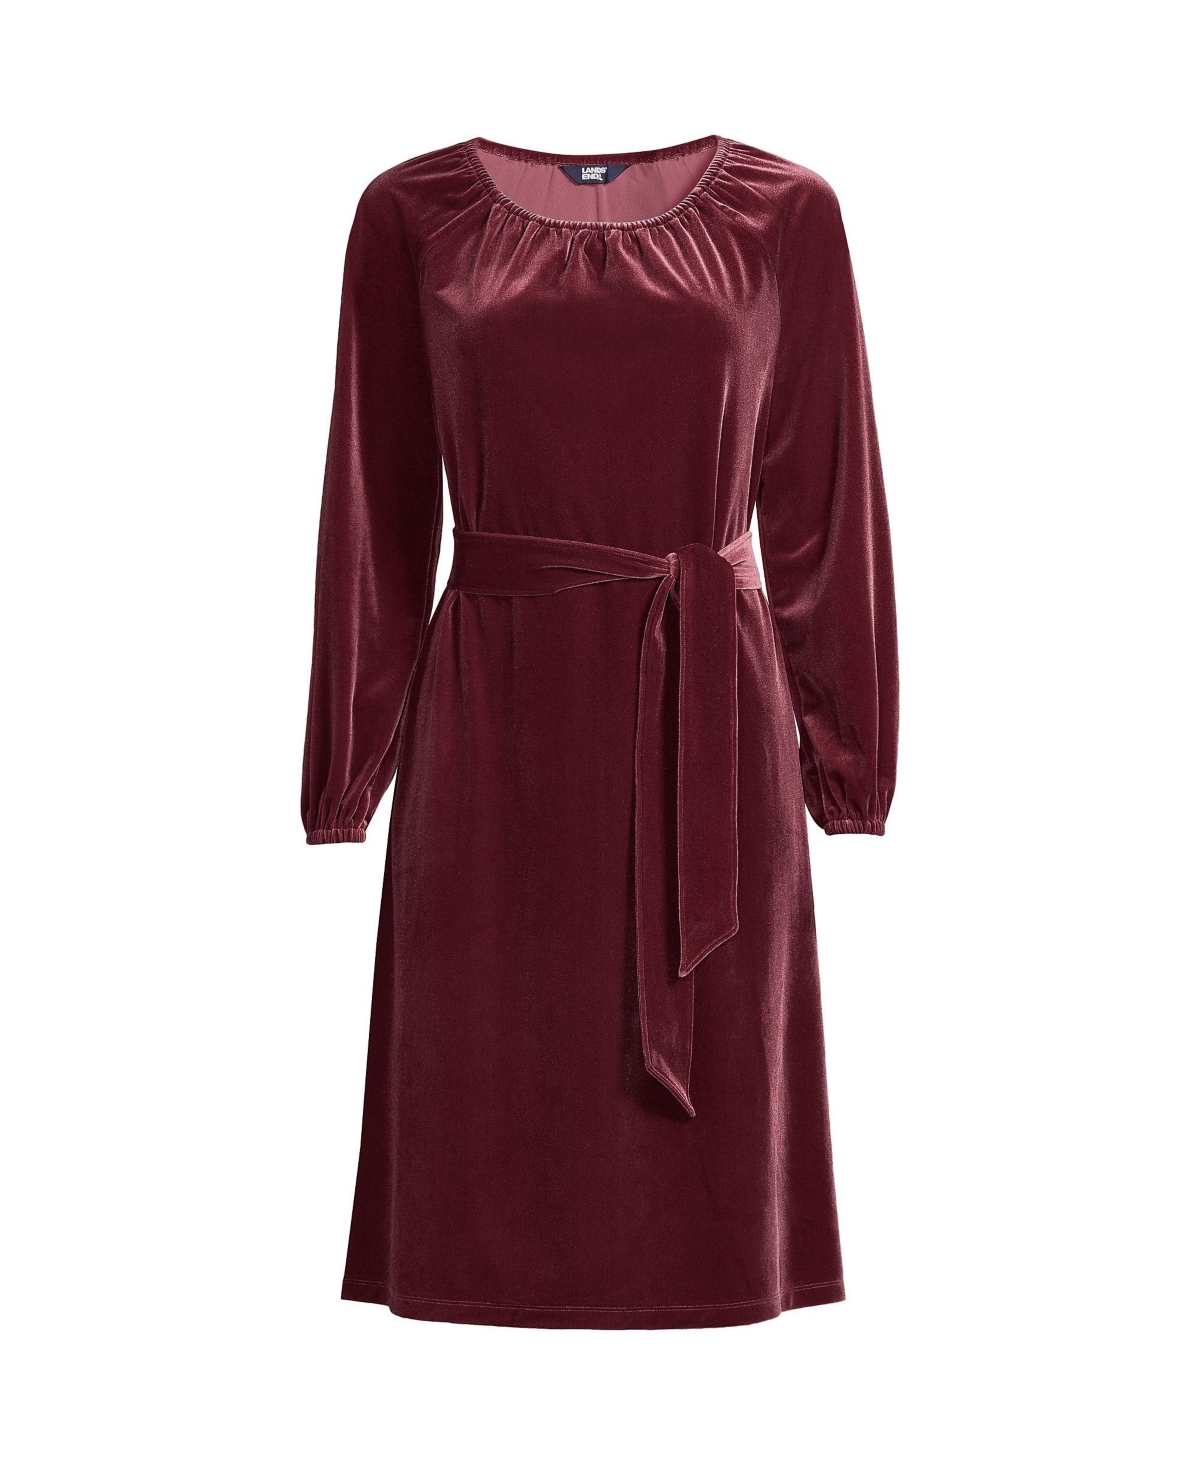 Women's Velvet Peasant Knee Length Dress - Rich burgundy